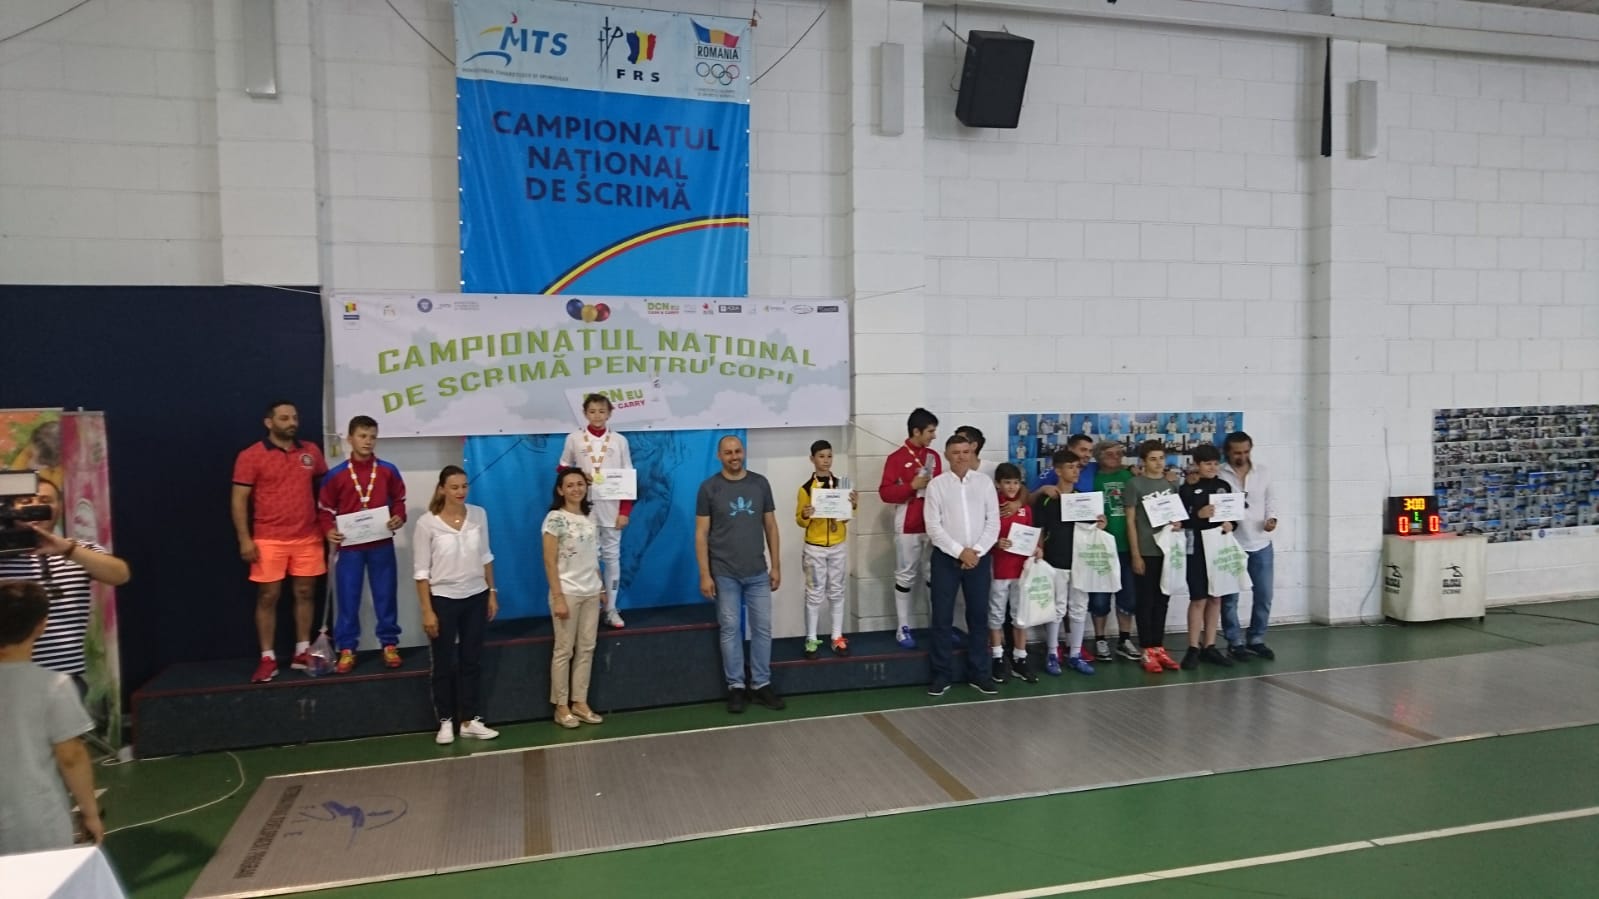 Vlad Covaliu (CS Dinamo) a câștigat Campionatul Național de scrimă pentru copii, ediția 2018, în proba de sabie masculin, la categoria 12-13 ani